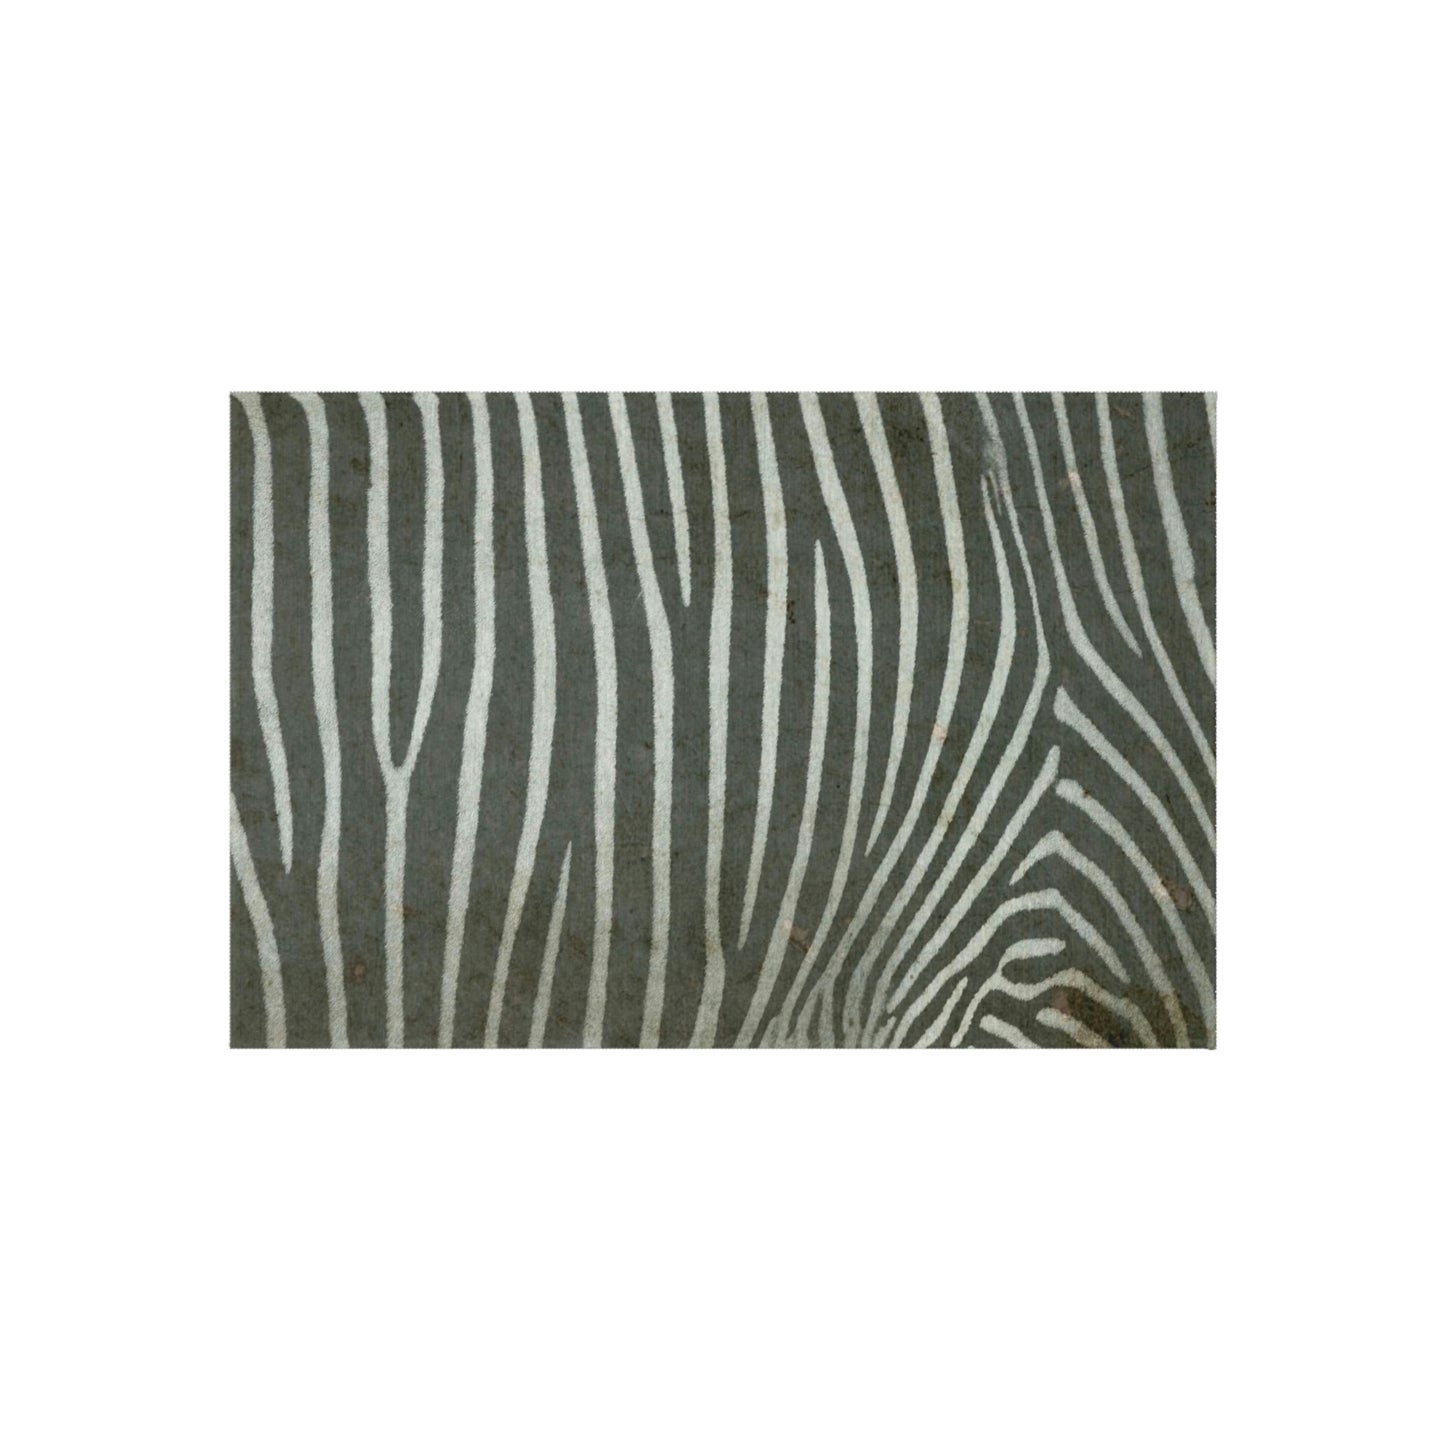 Zebra Print Outdoor Rug